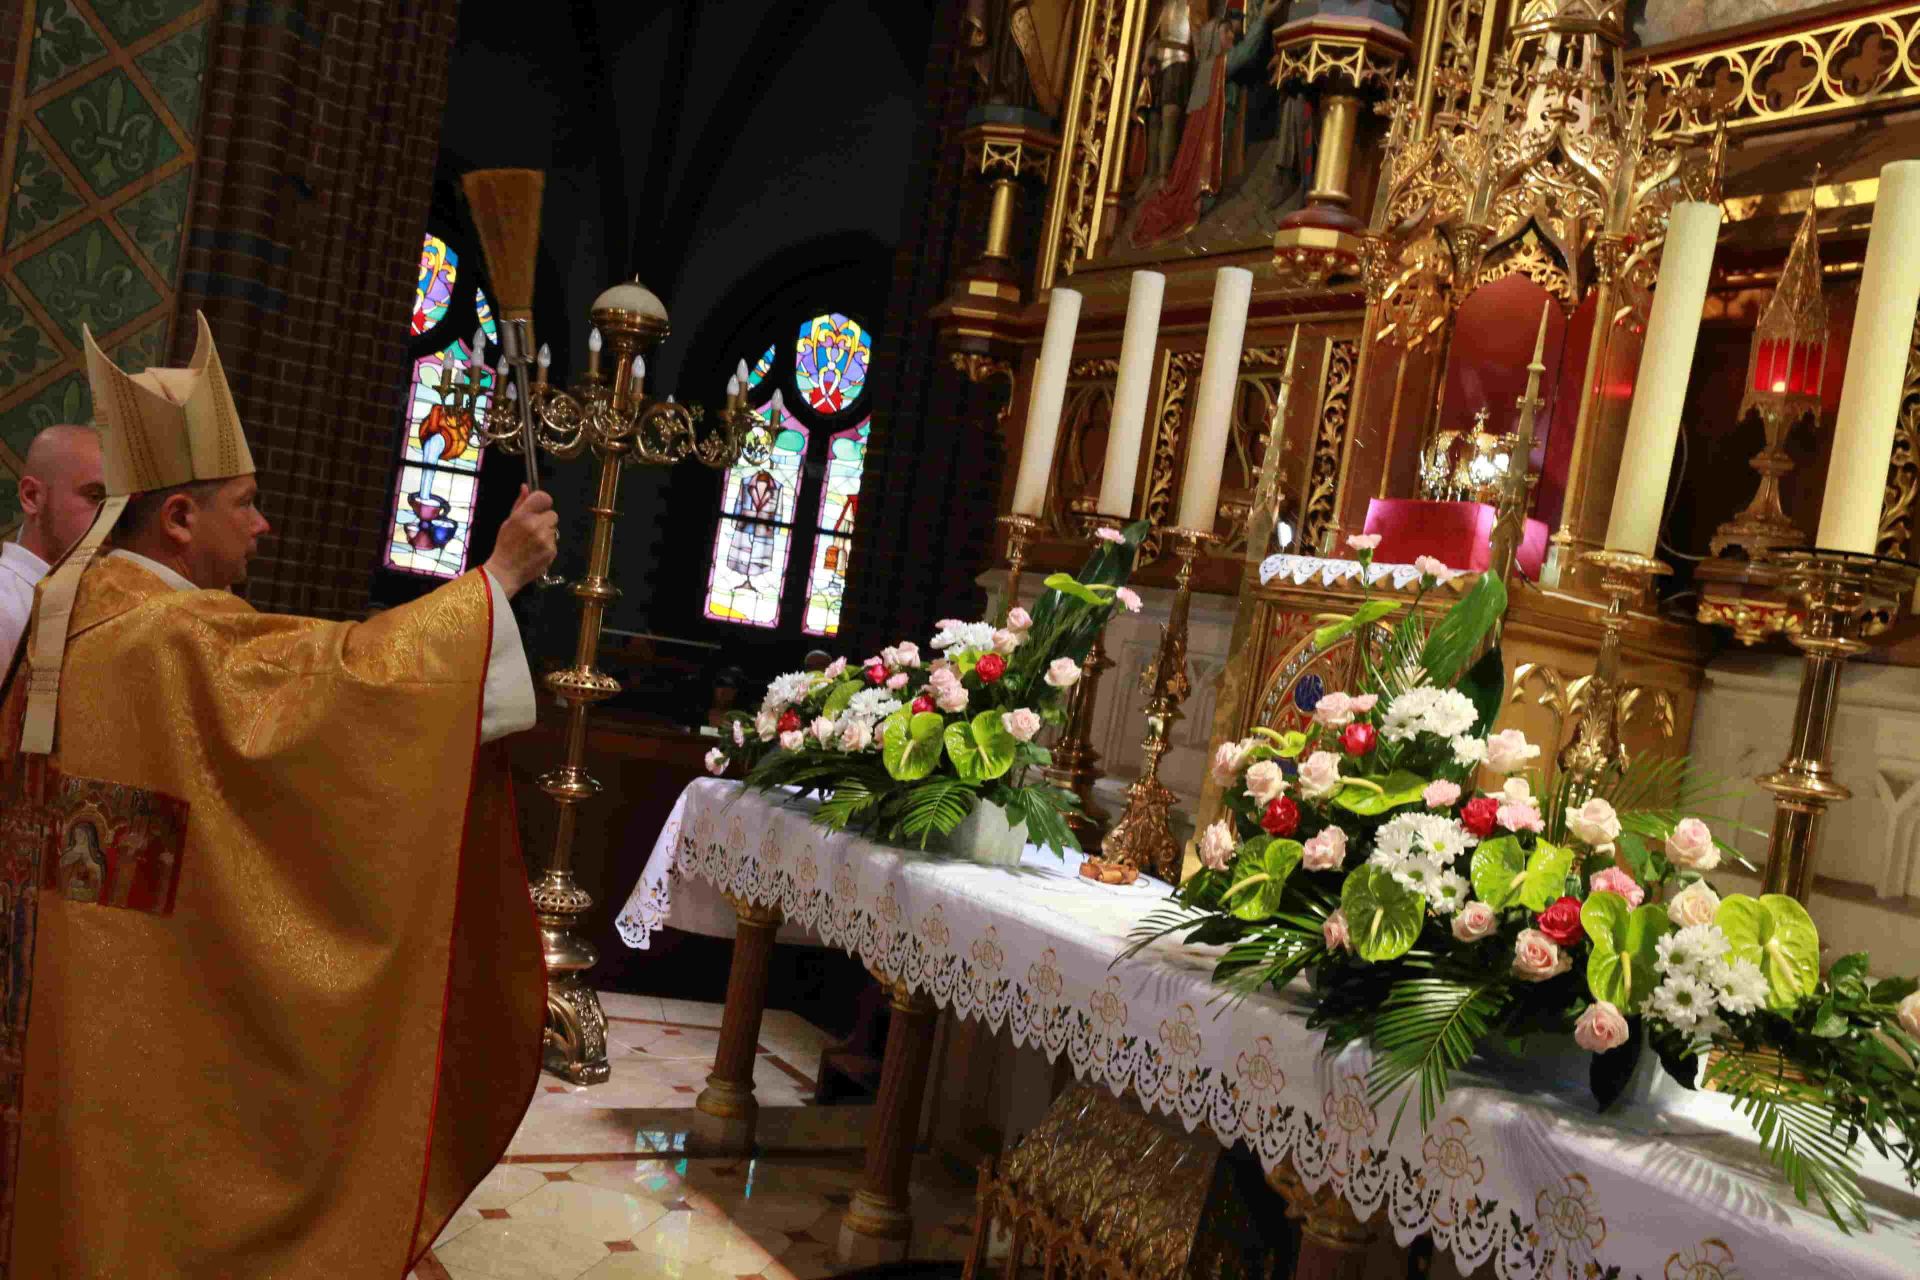 W czasie odpustowej sumy ks. biskup Grzegorz Olszowski poświęcił koronę chwały - jubileuszowe dziękczynne wotum dla patrona bazyliki i Rybnika. Zdj. Wacław Troszka